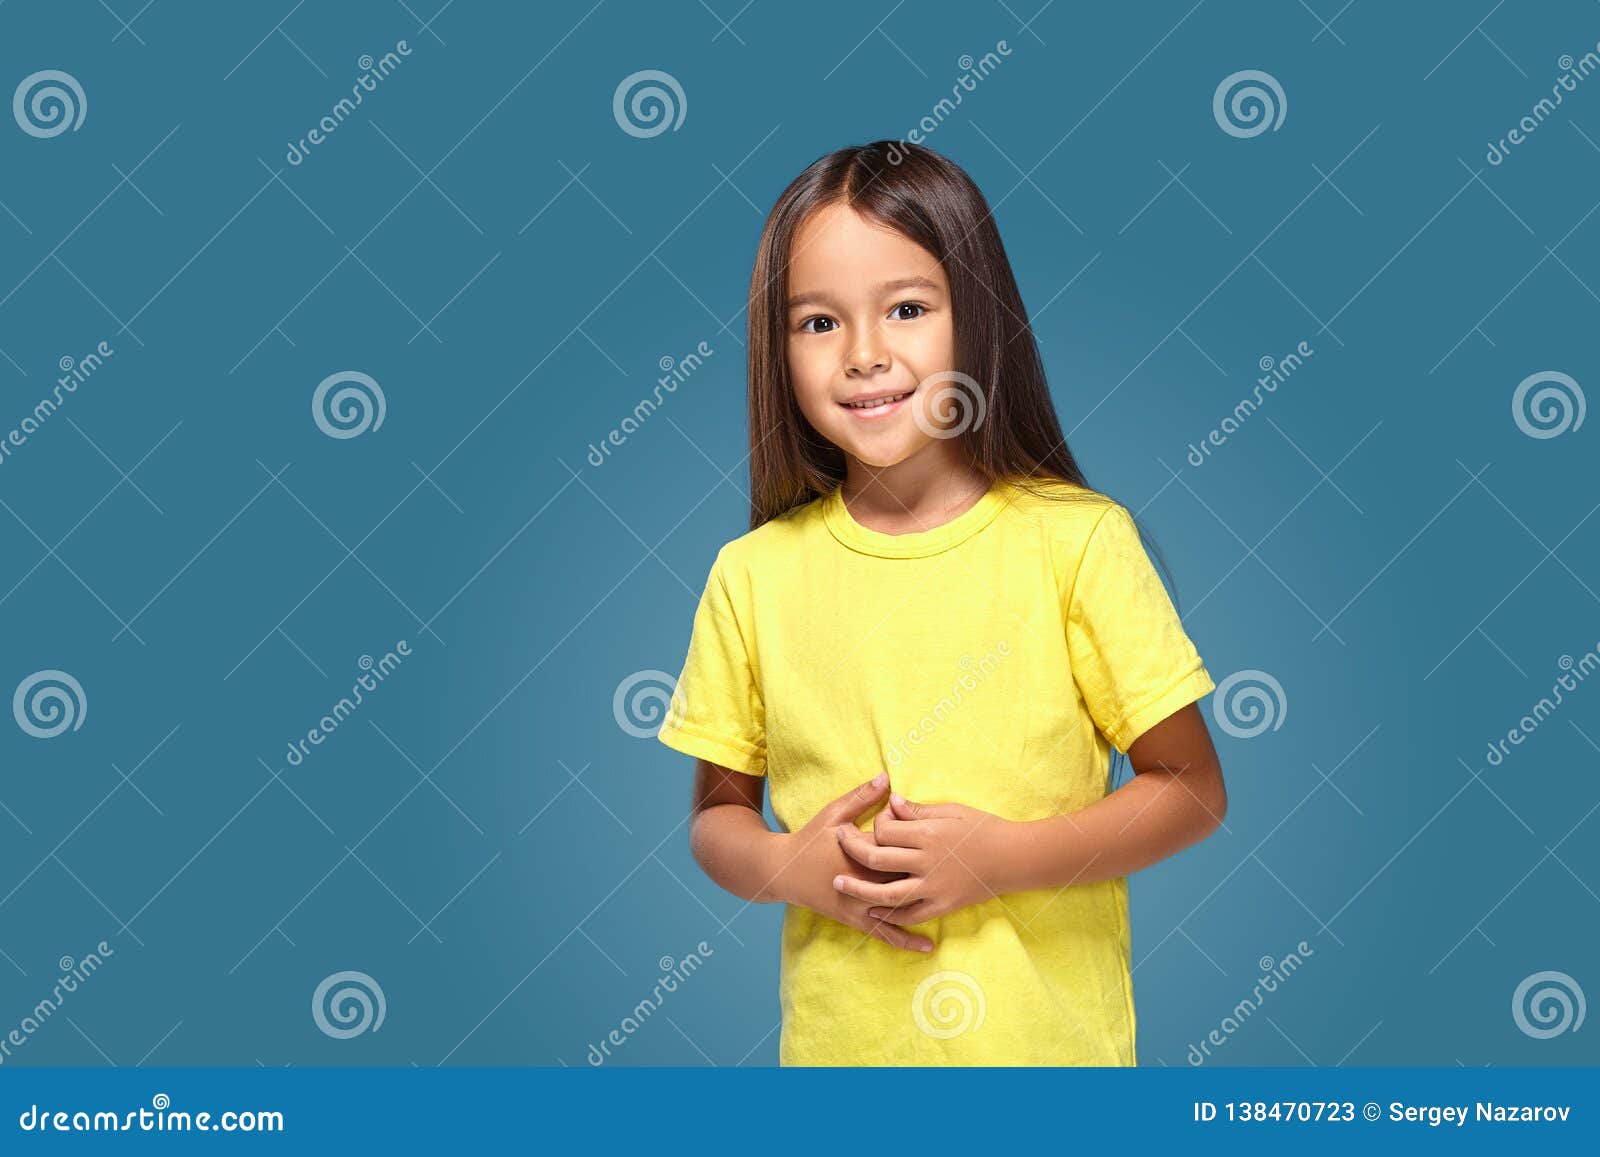 La Niña En Camiseta Amarilla Está Sonriendo Imagen de archivo